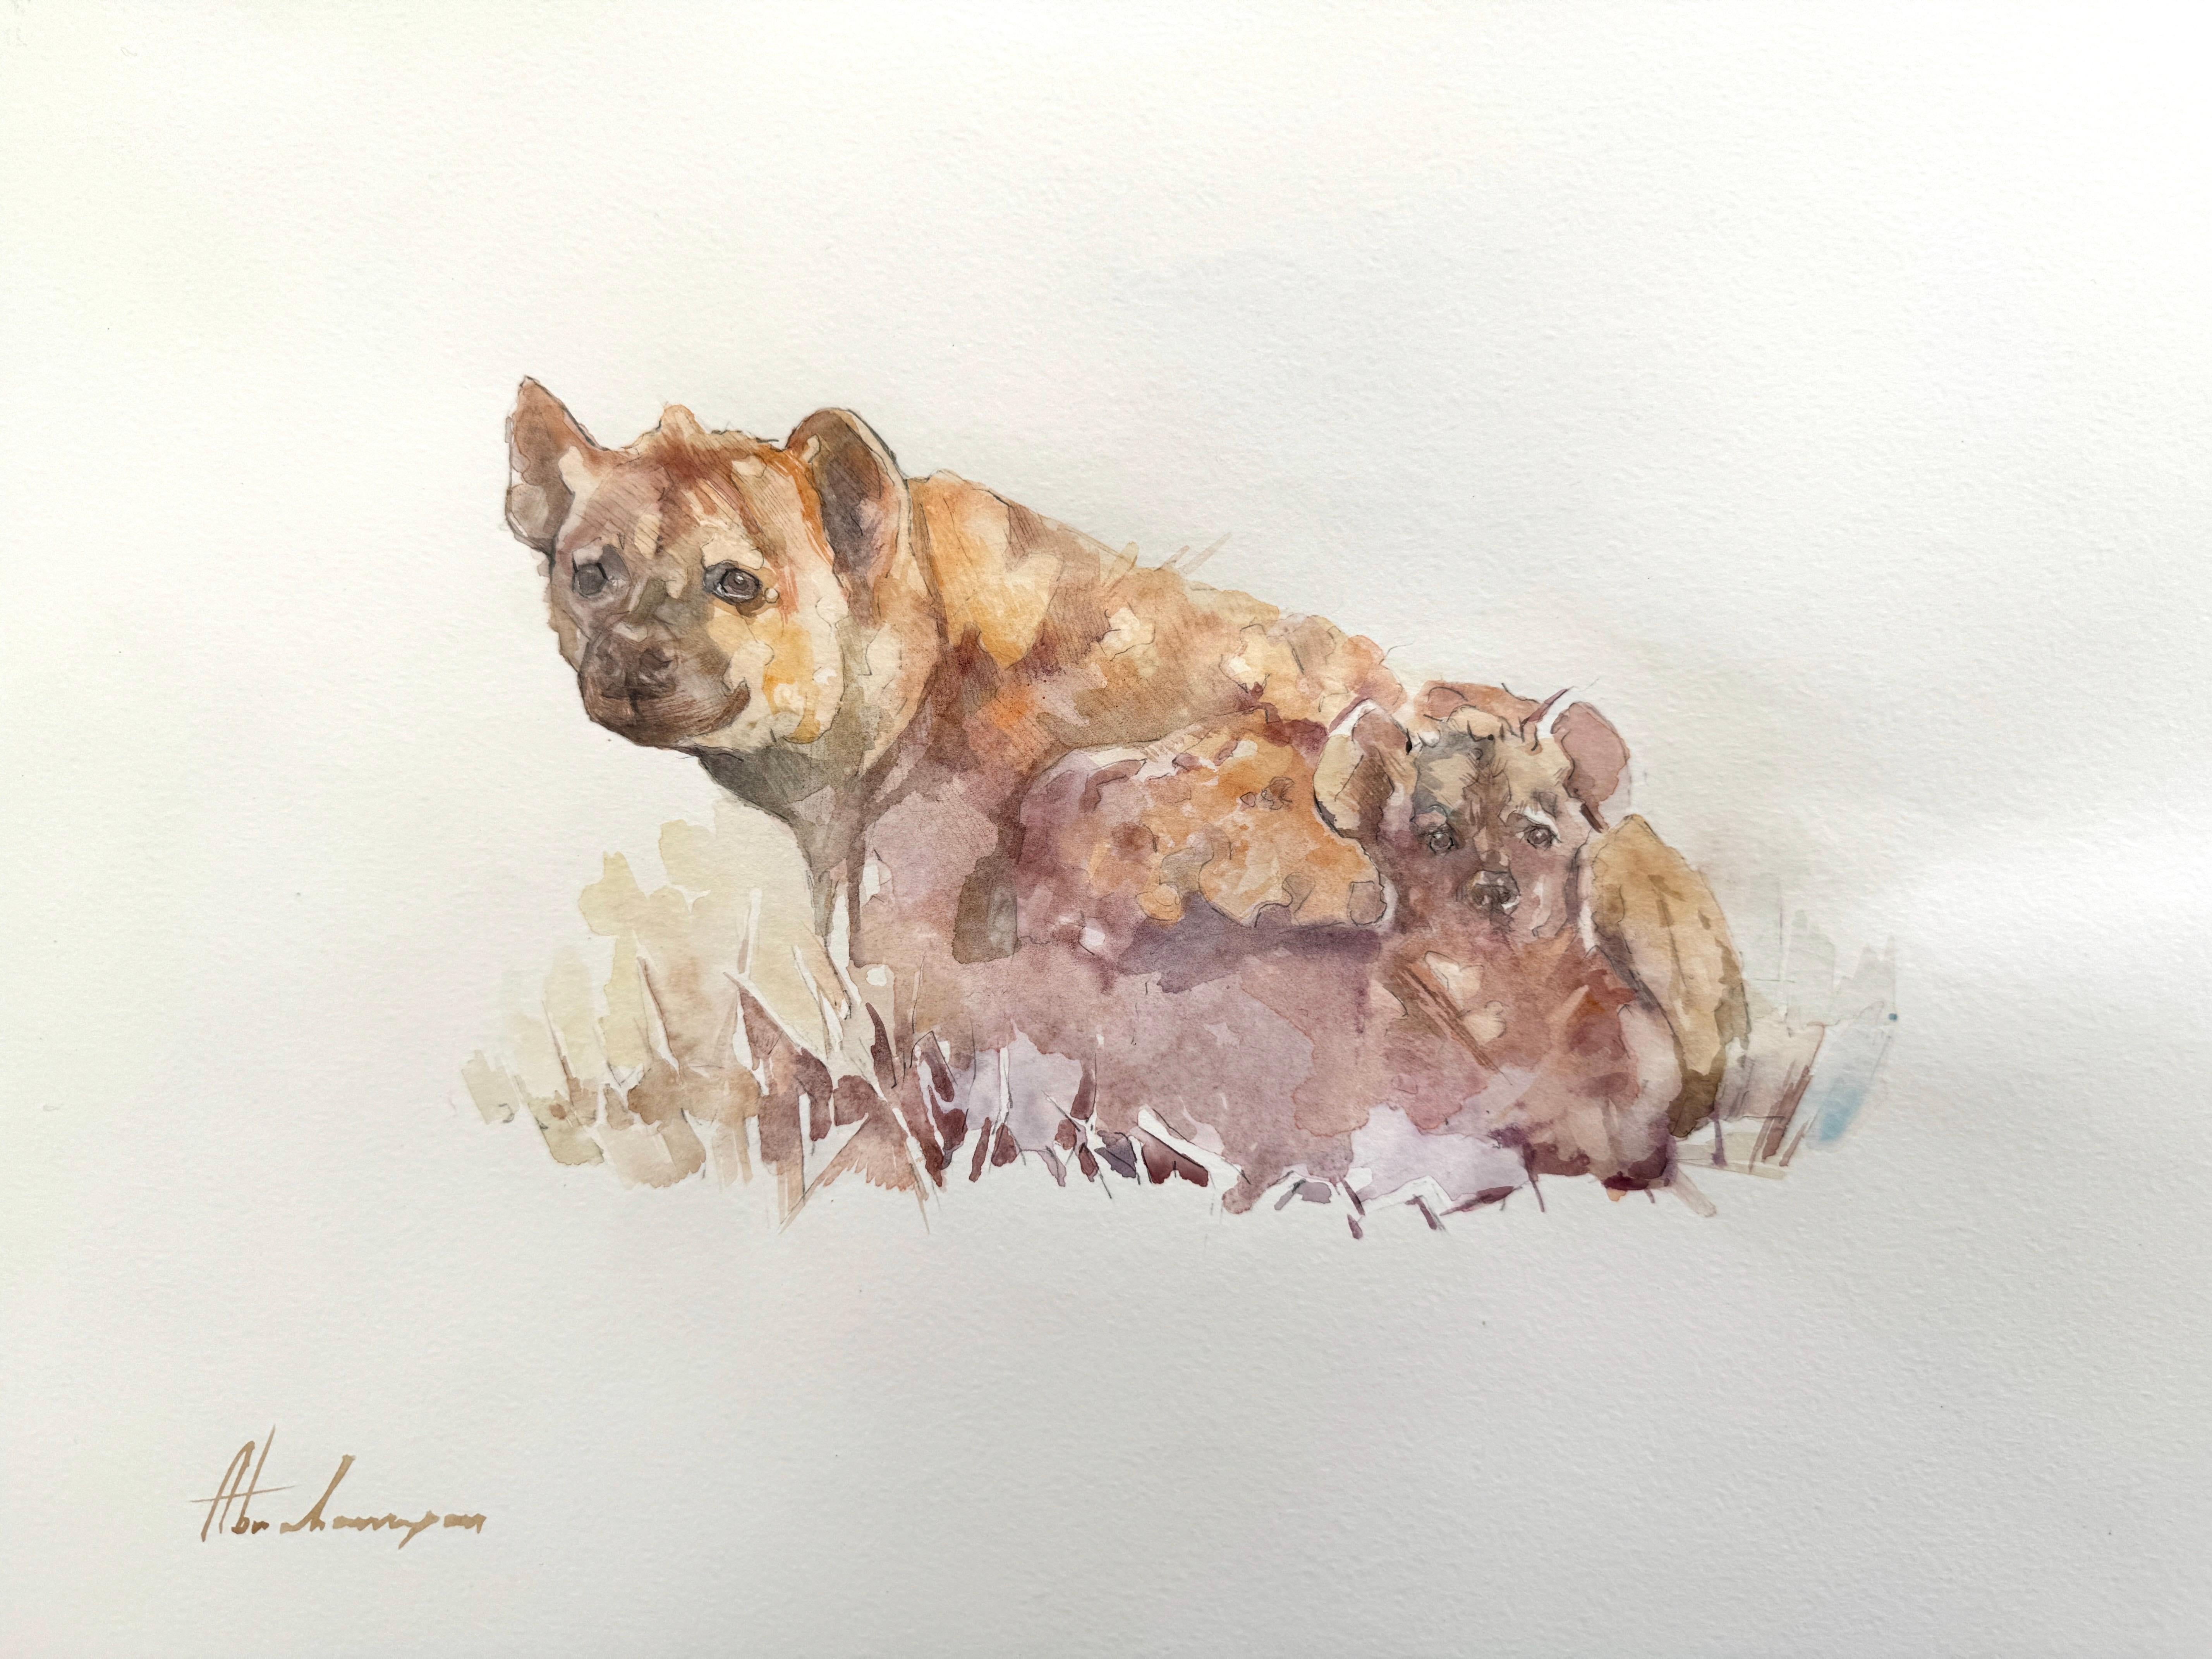 Animal Art Artyom Abrahamyan - Hyenas, animal sauvage, aquarelle sur papier, peinture faite à la main, unique en son genre